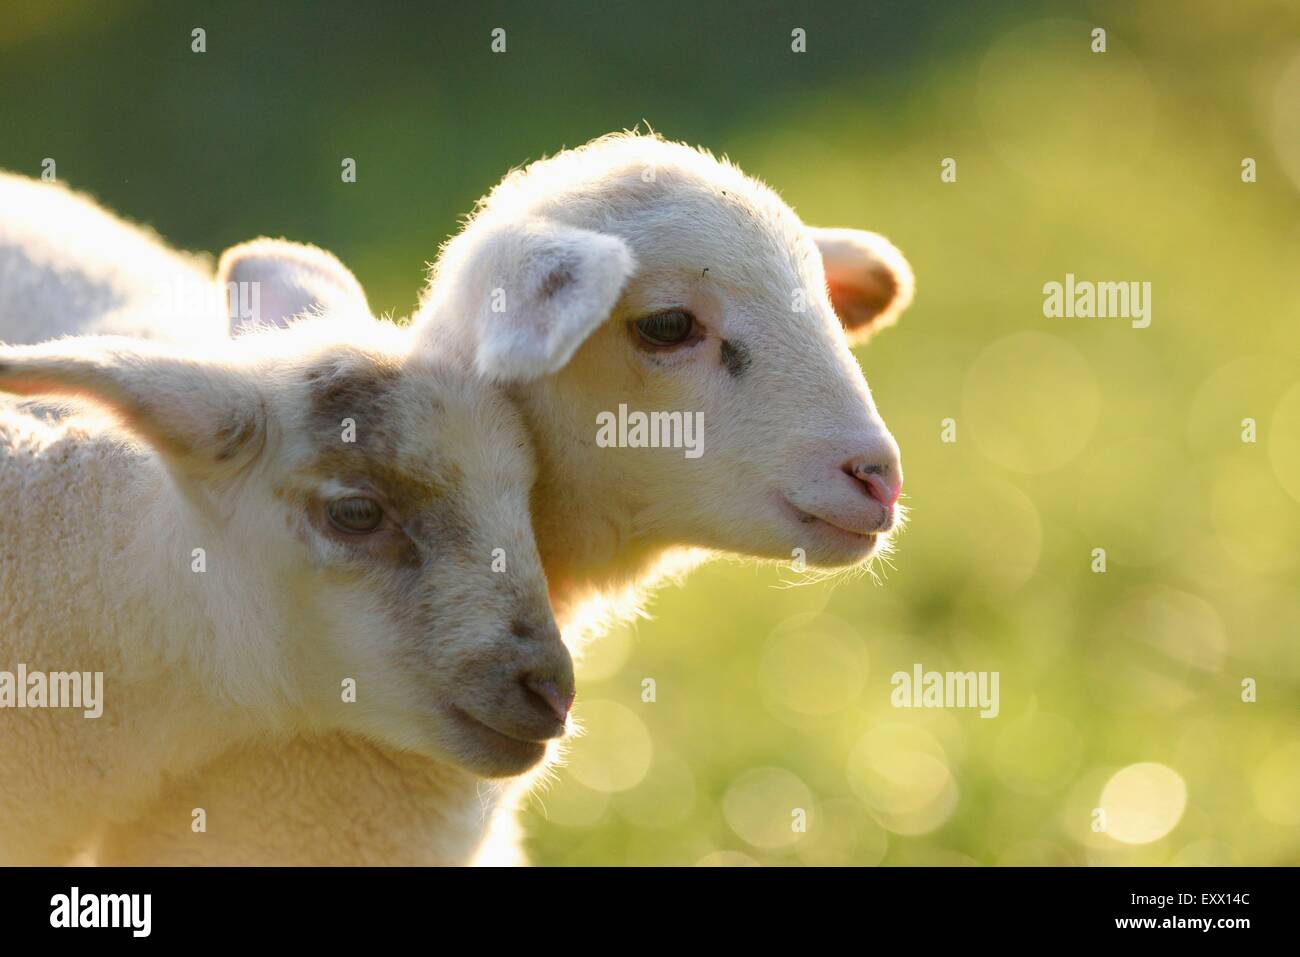 Close-up de deux moutons agneaux dans un pré Banque D'Images